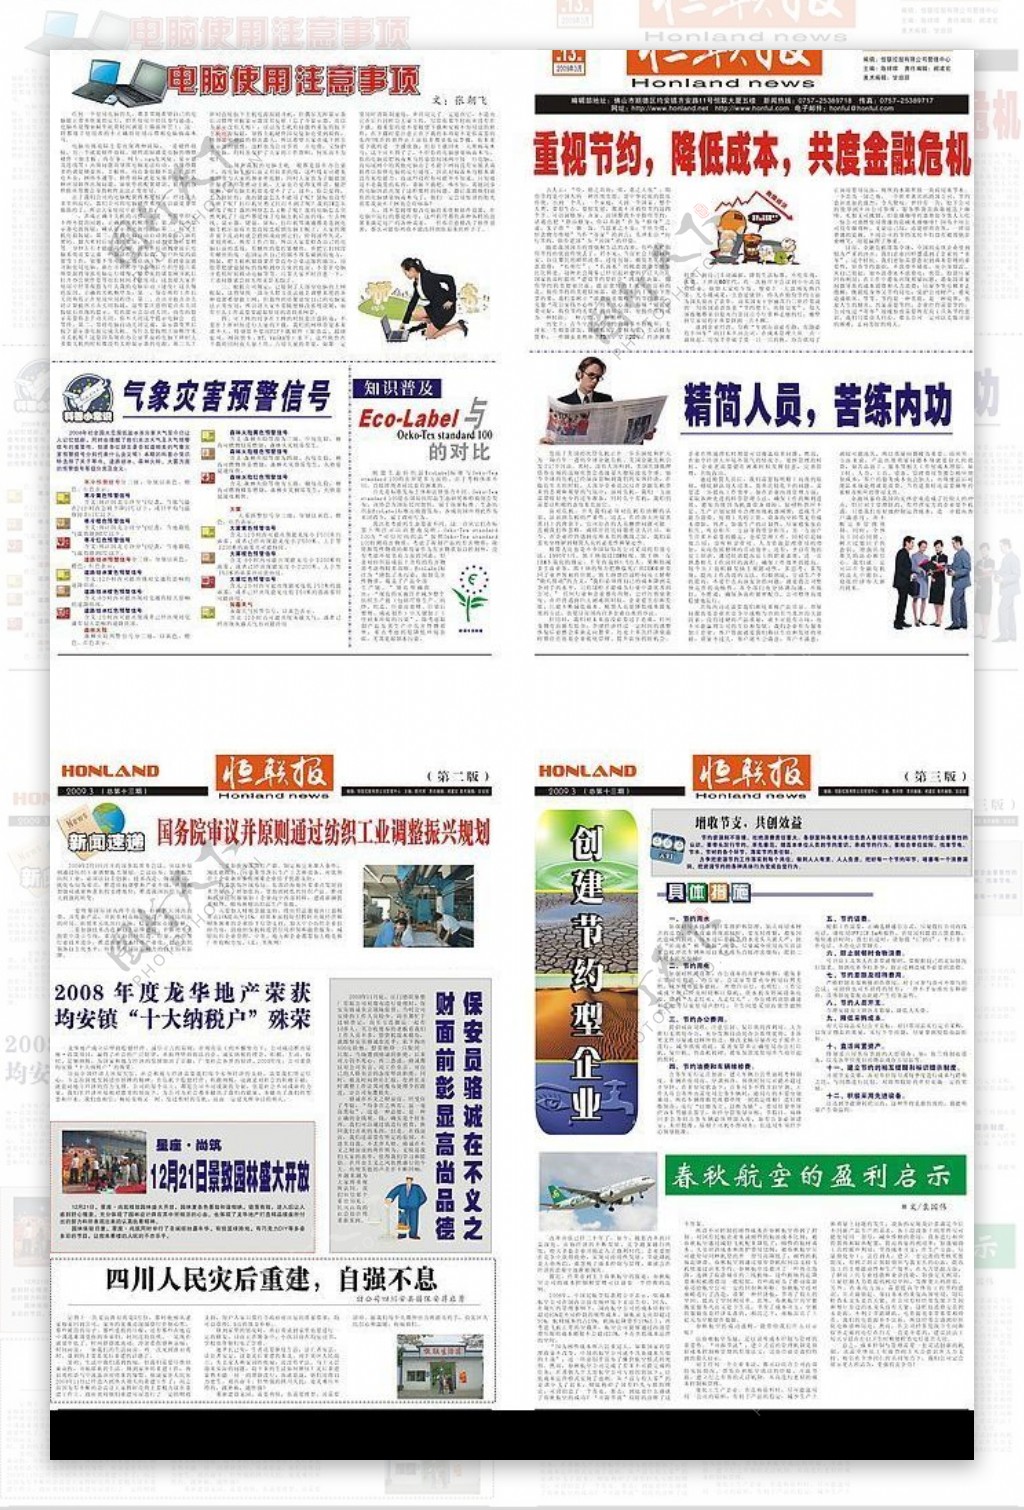 企业报2009年3月版本图片